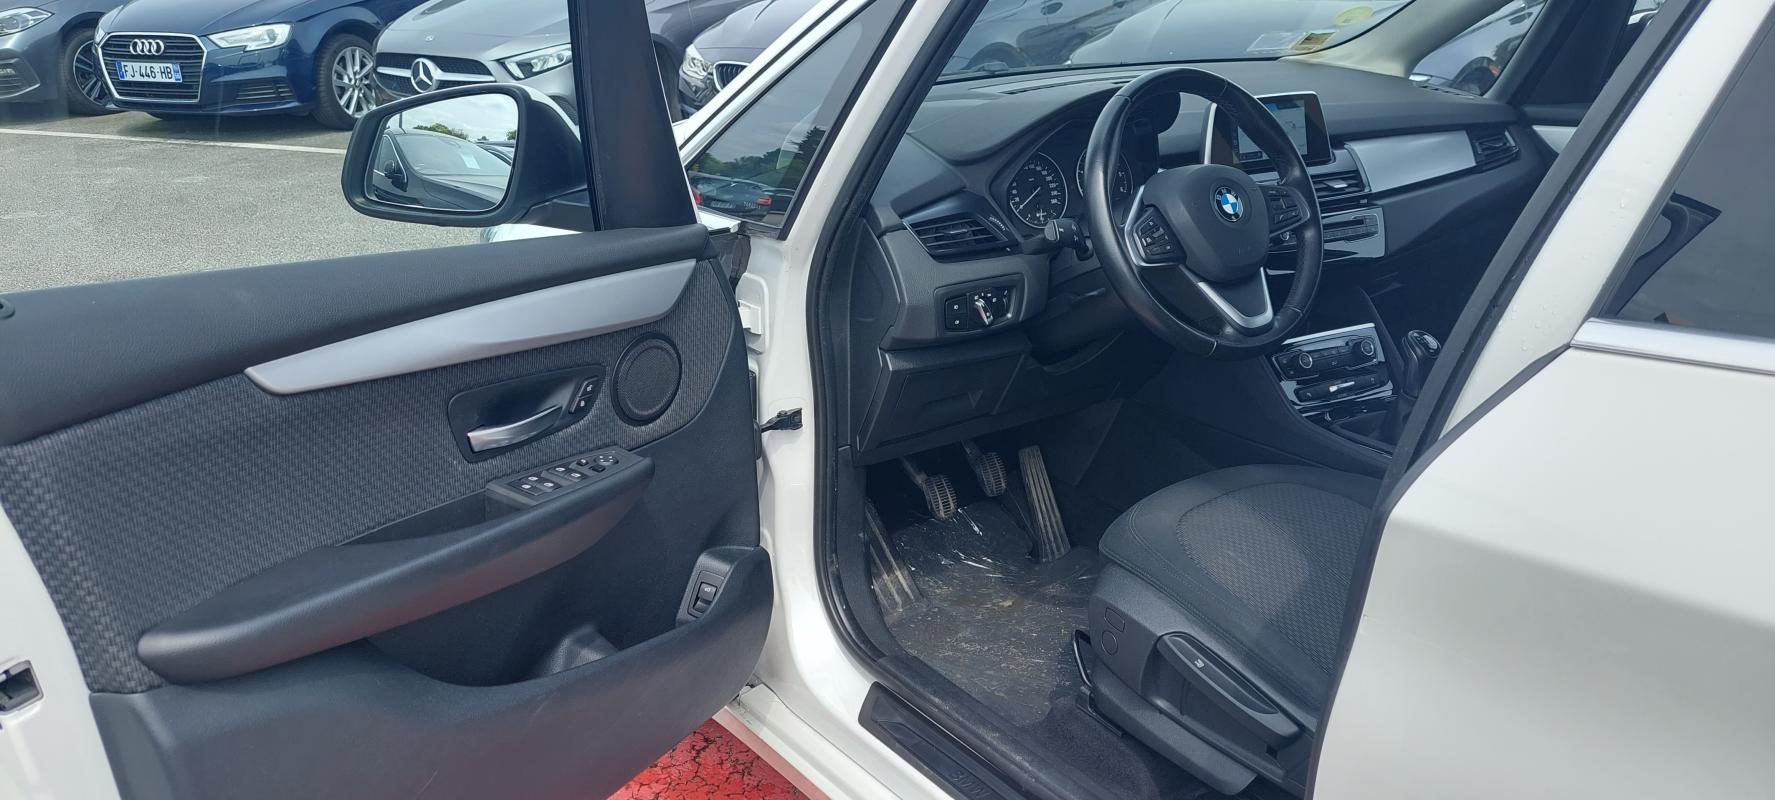 Intérieur extérieur BMW SERIE 2 ACTIVE TOURER BLANC 